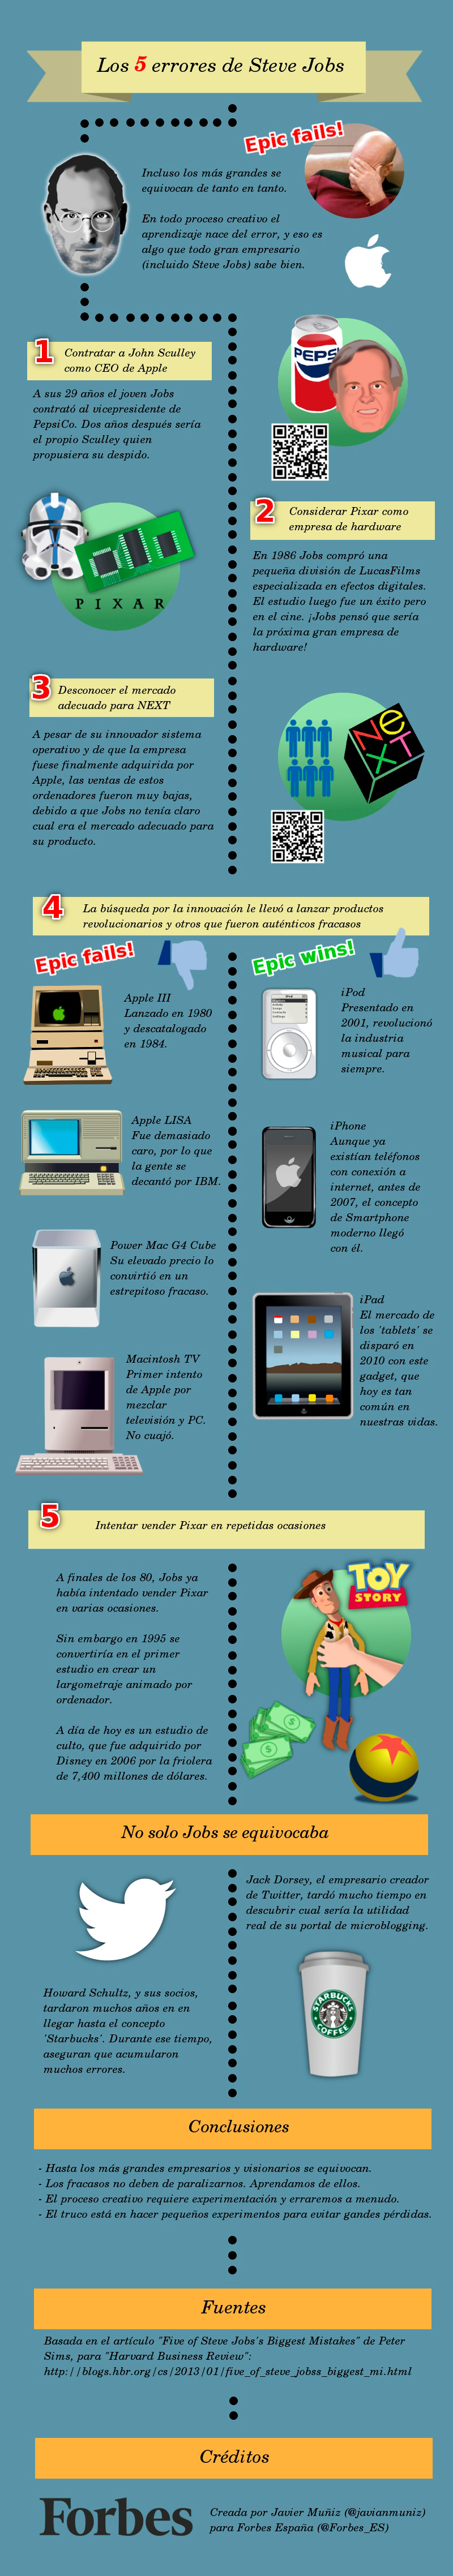 Infografía-Steve-Jobs-Forbes